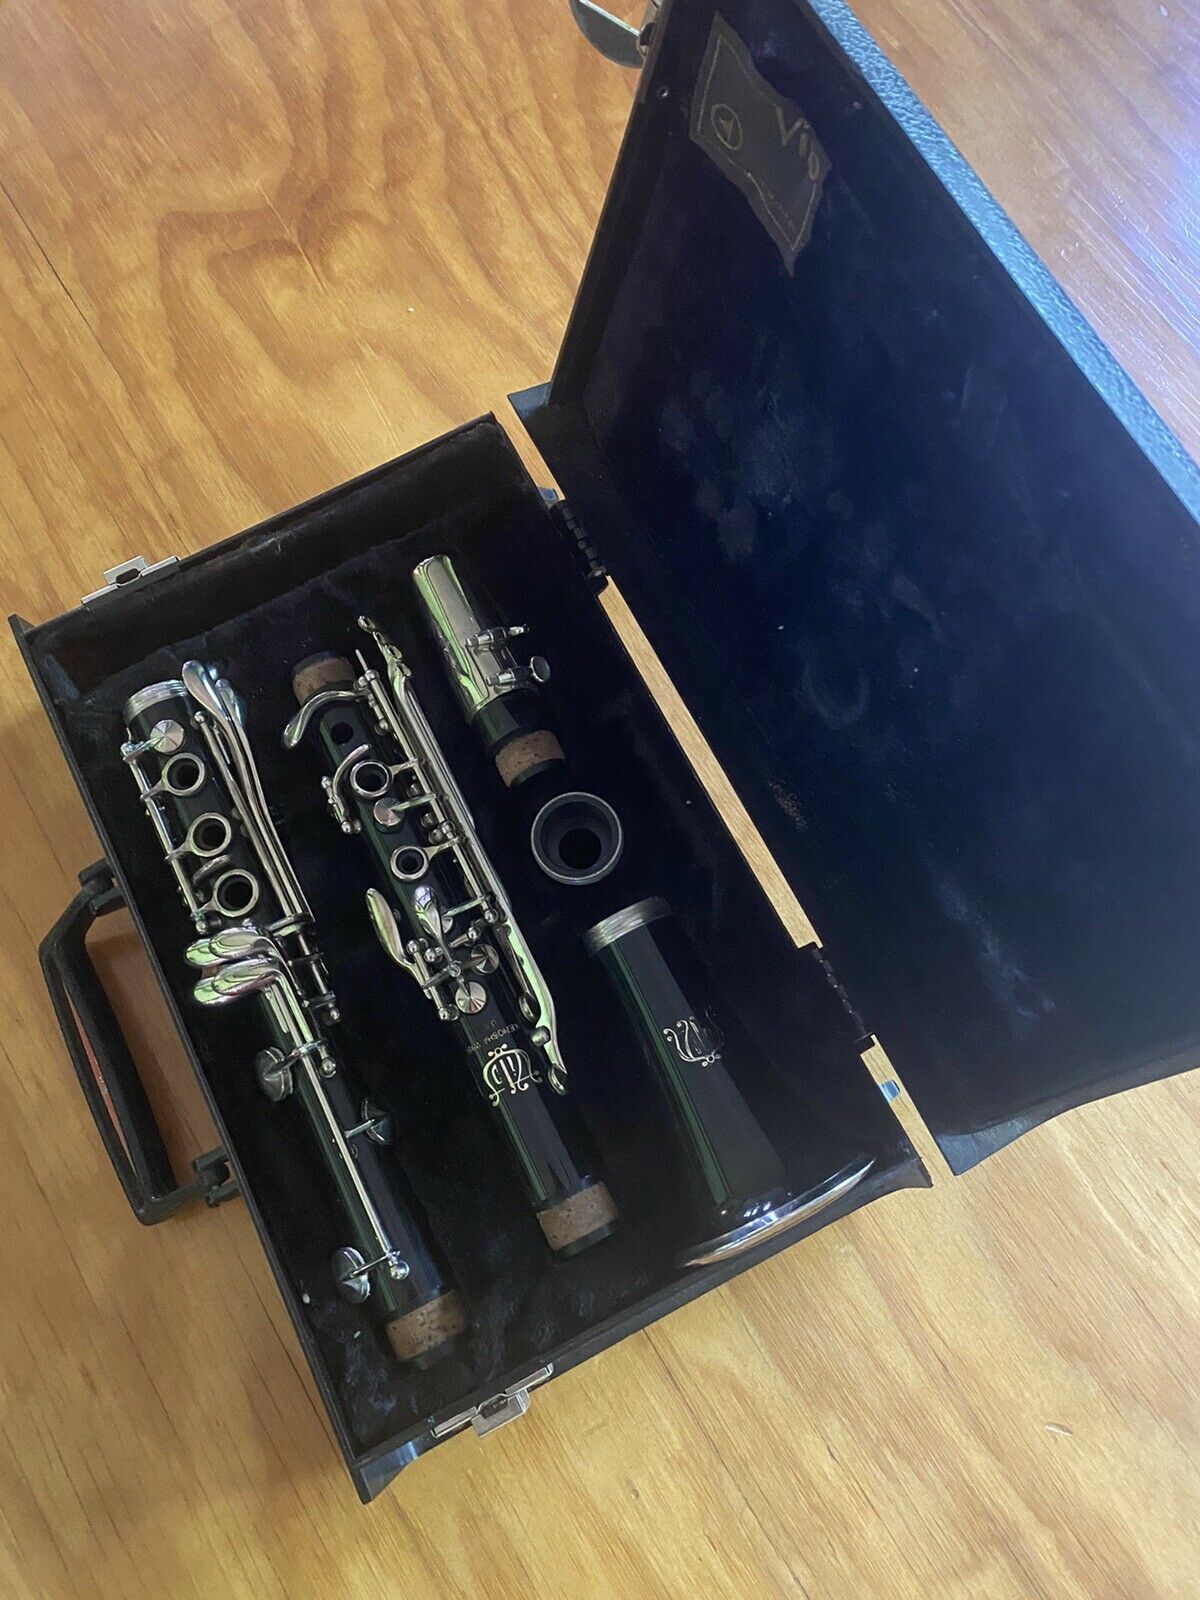 Vito Kenosha Wisconsin Made In Usa Clarinet Vintage With Case